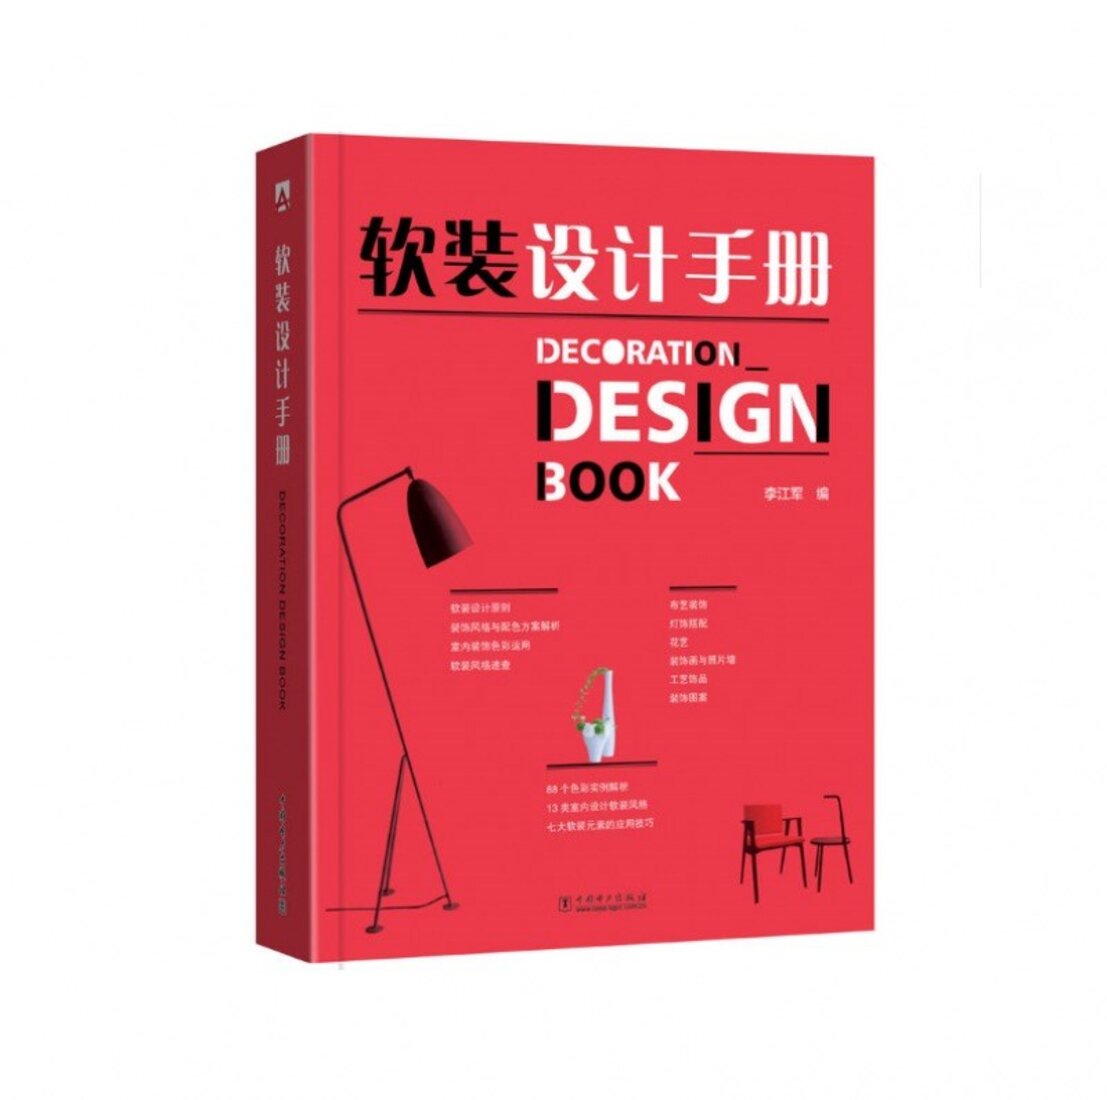 《软装设计手册》